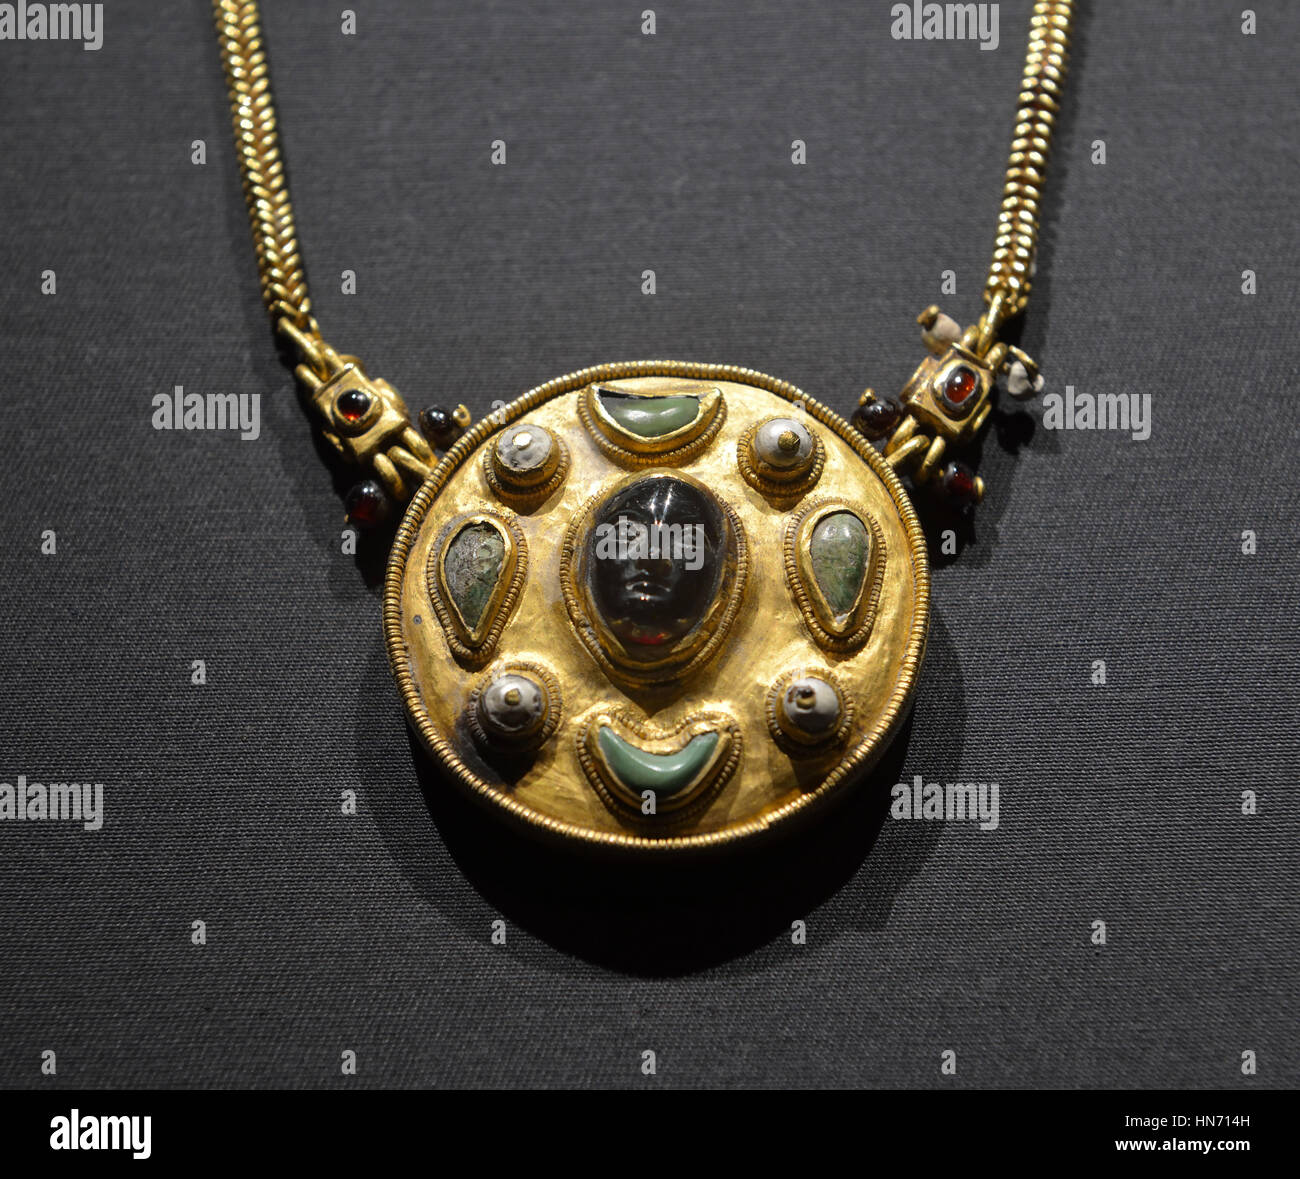 Collar con camafeo. Thaj, Tell al-Zayer. En el siglo I EC. Oro, perlas, turquesa, y ruby.Museo Nacional, Riad. Foto de stock